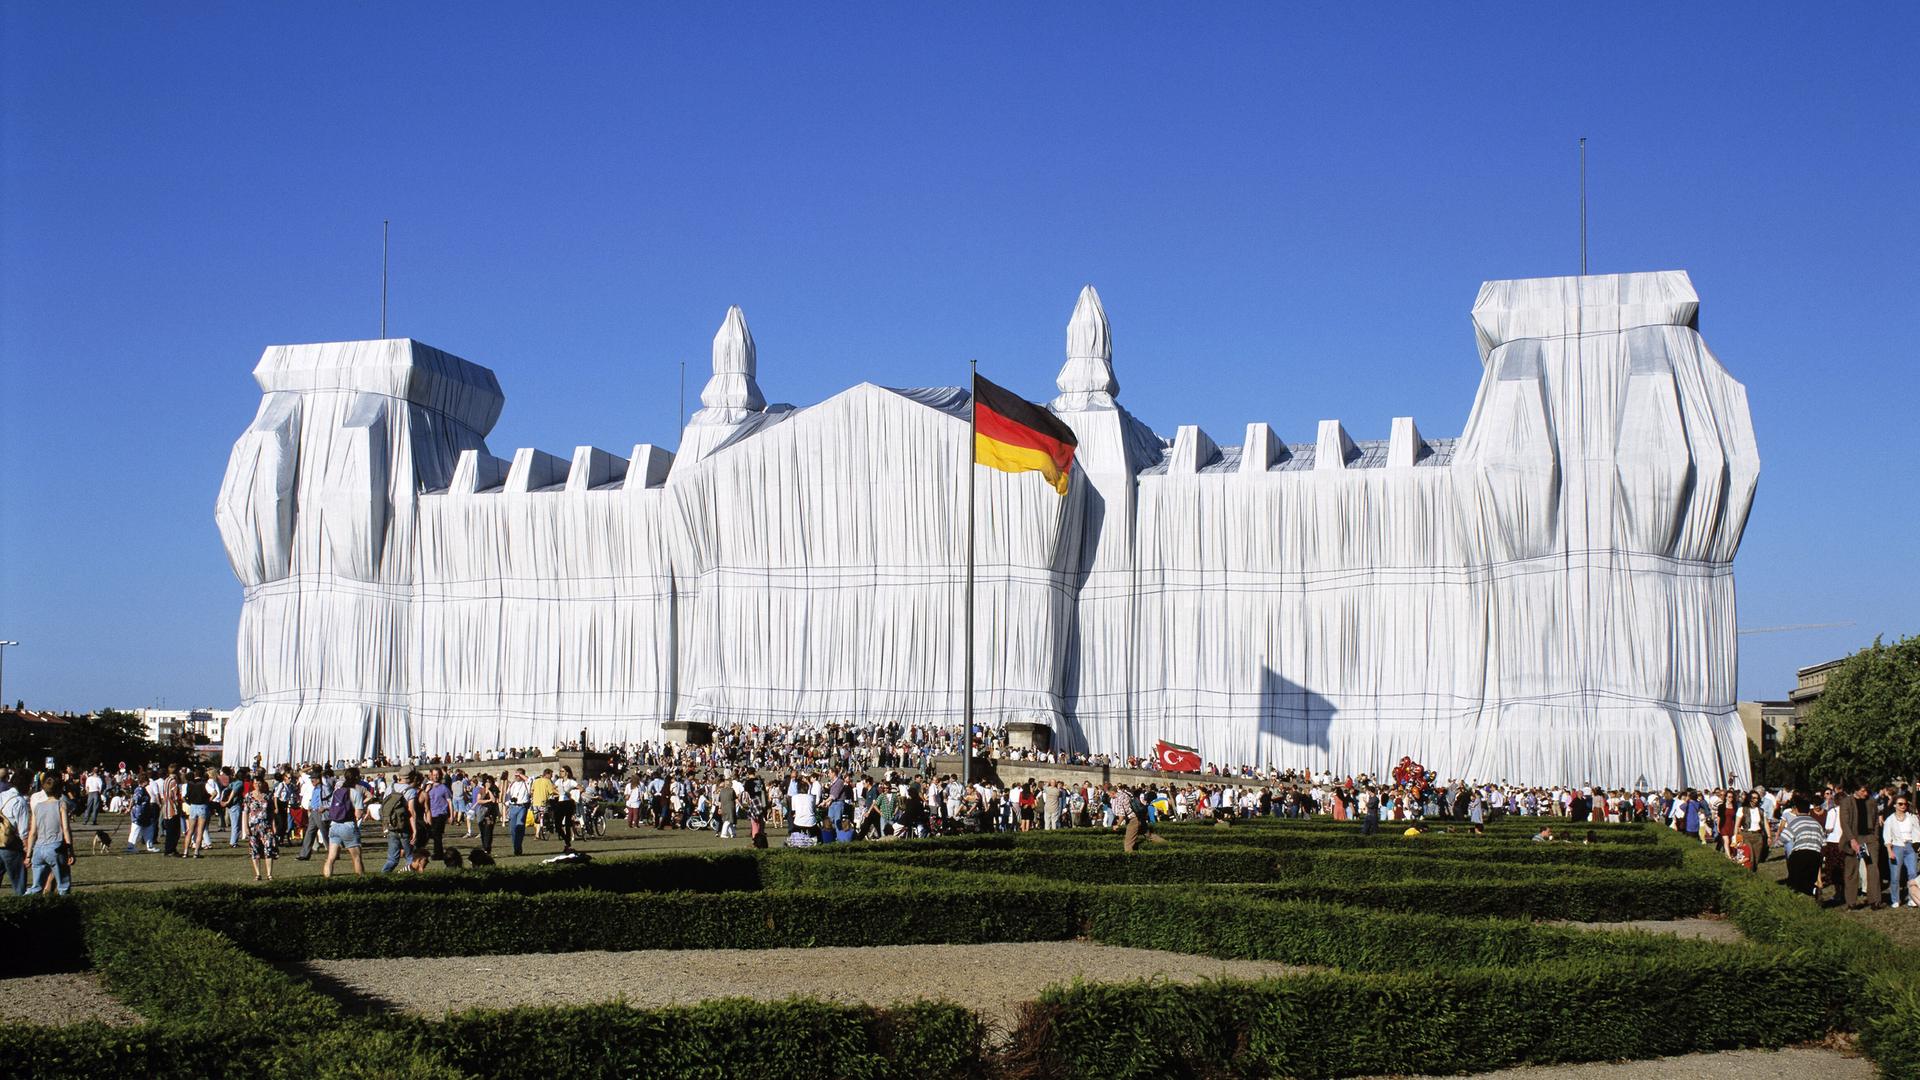 Der Reichstag in Berlin, verhüllt von Christo und Jeanne-Claude im Jahr 1995. Das Gebäude ist in weiße Tücher gehüllt.